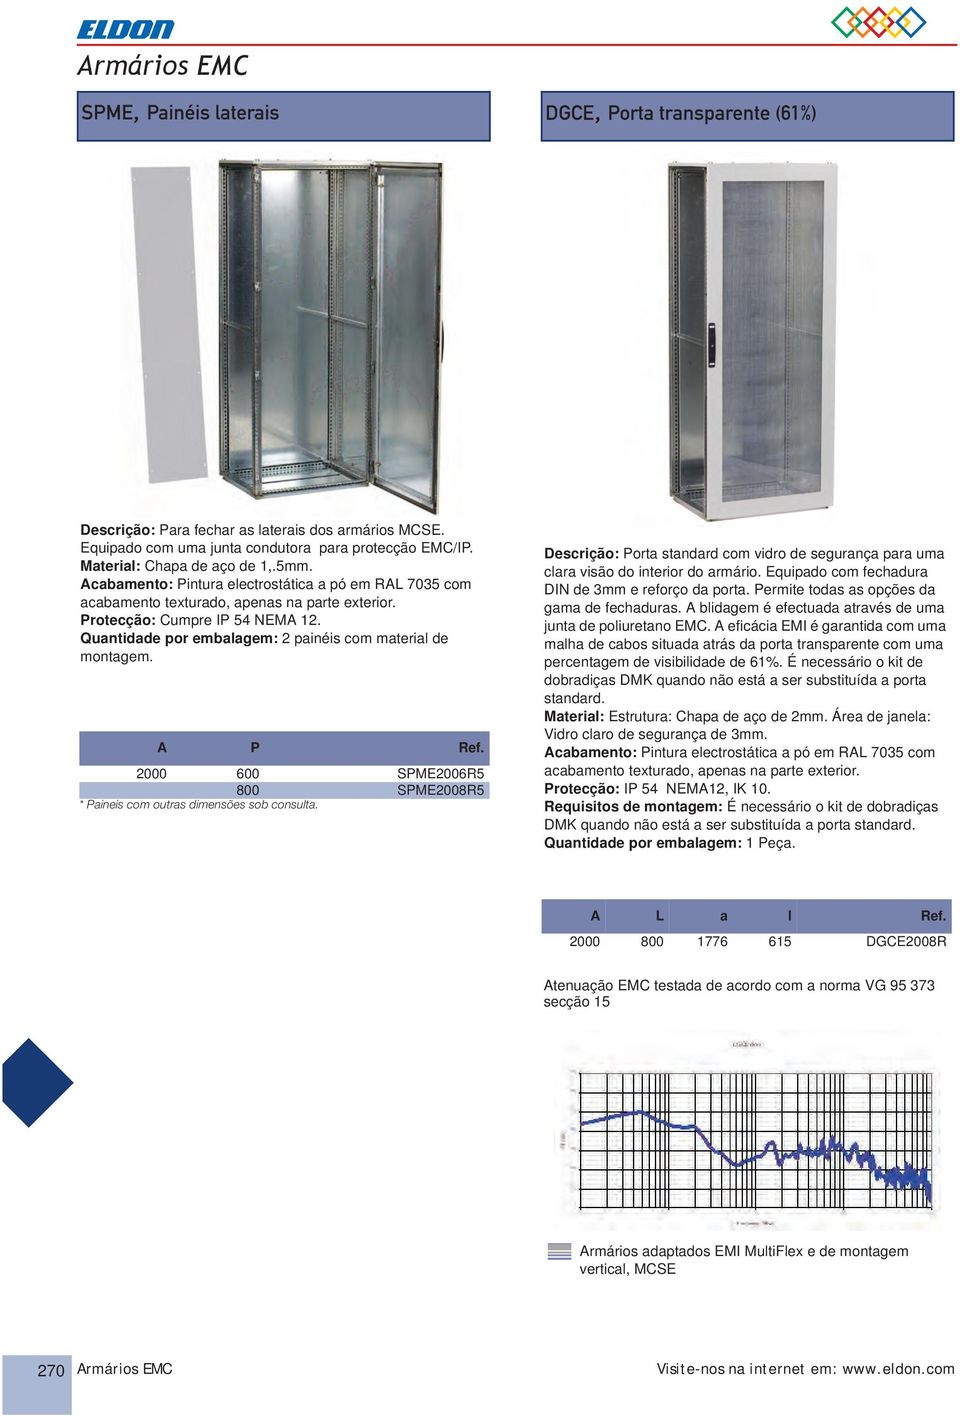 A P Ref. 2000 600 SPME2006R5 800 SPME2008R5 * Paineis com outras dimensões sob consulta. Descrição: Porta standard com vidro de segurança para uma clara visão do interior do armário.